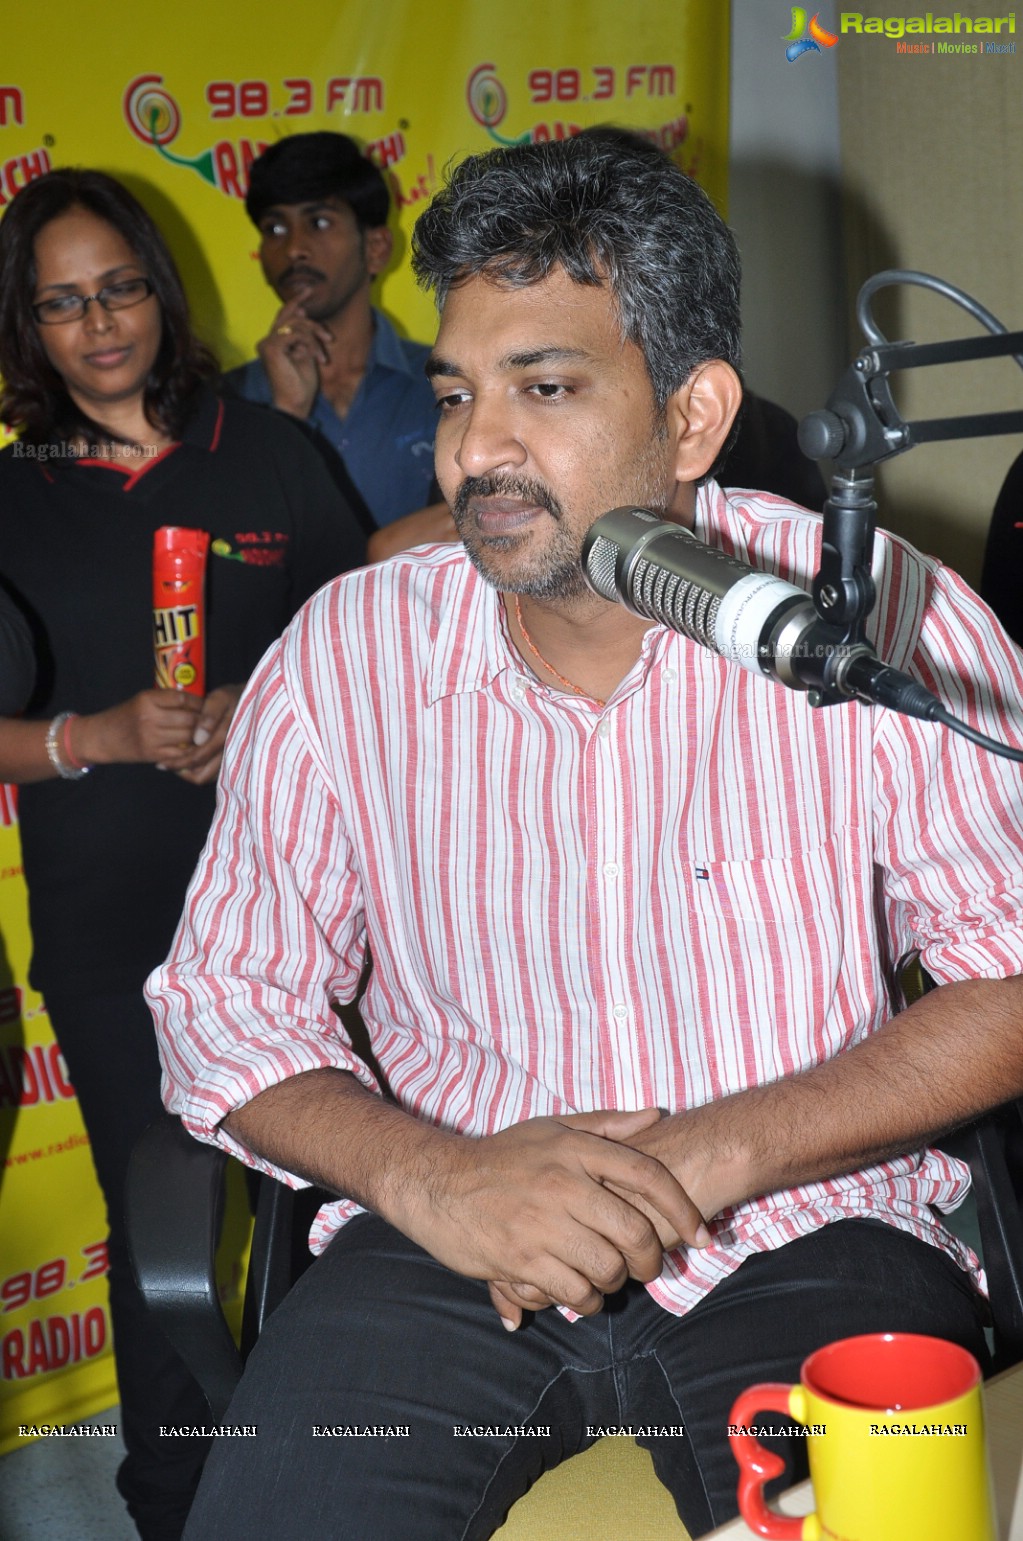 Rajamouli at Hyderabad Radio Mirchi